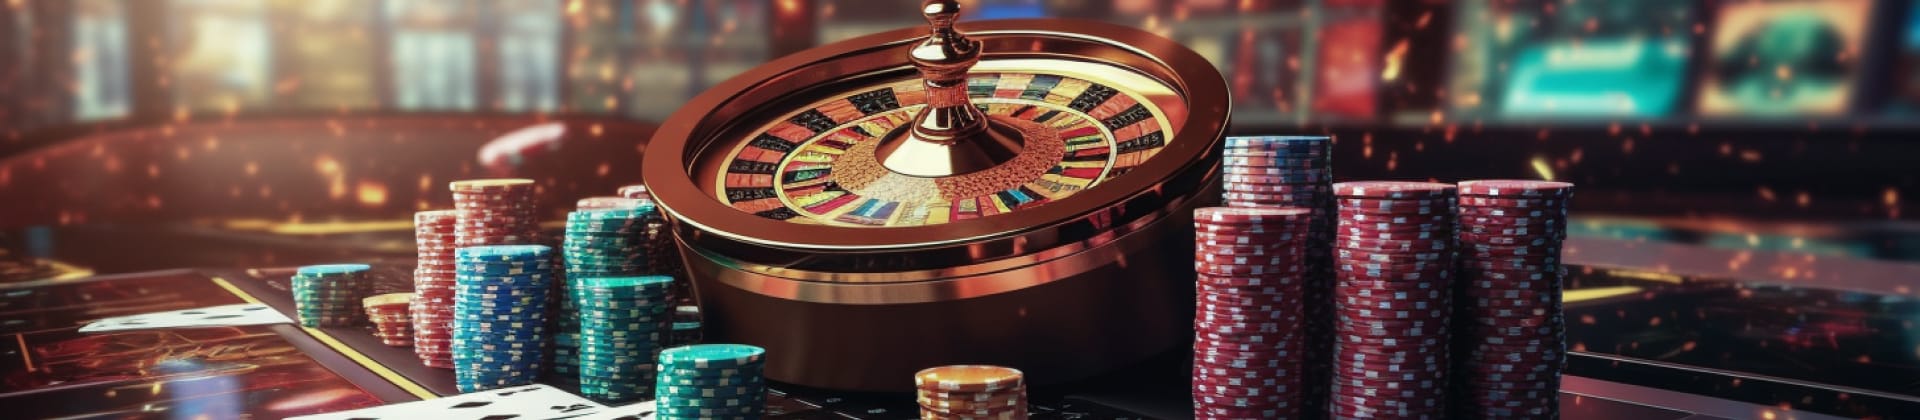 Instant deposits in ethereum casinos